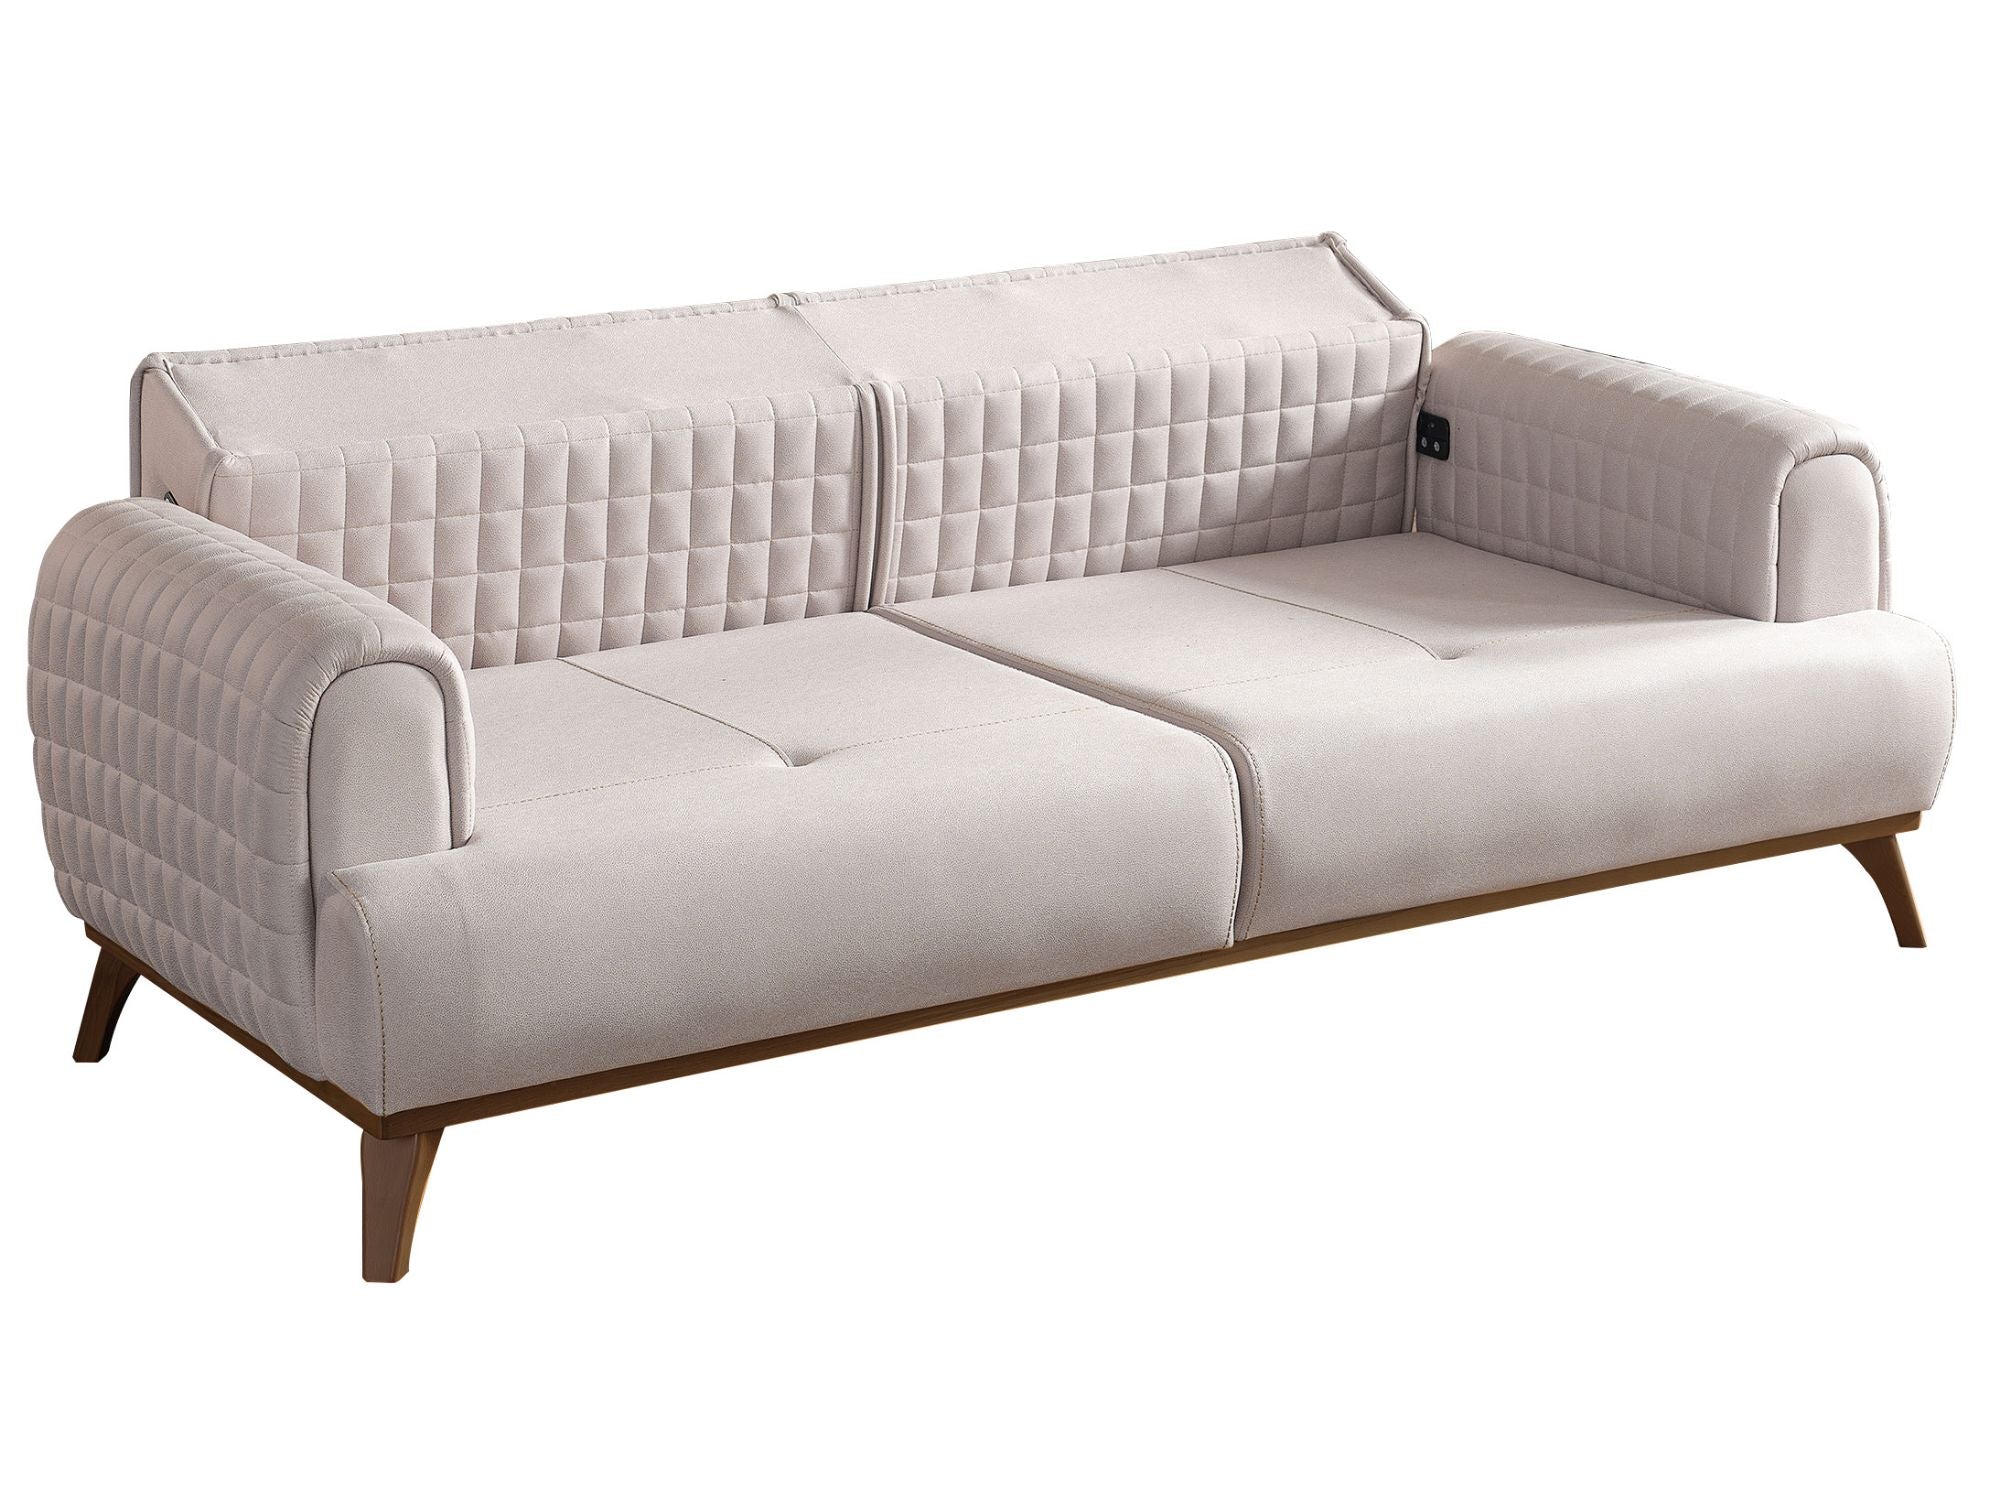 Hisar Convertible Sofa Grey